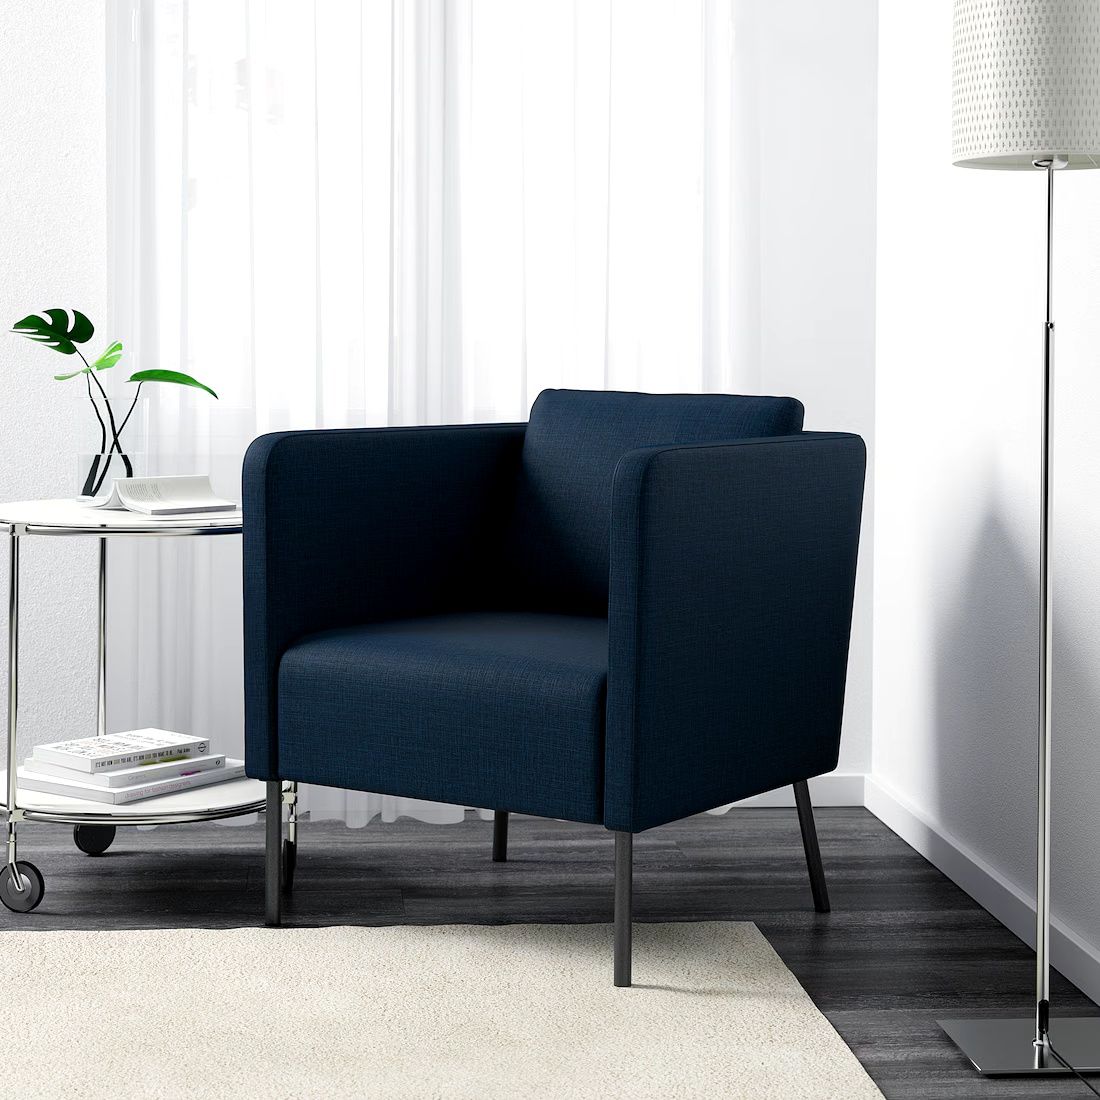 Fotele IKEA Ekero x2 szt. (75% RABAT)